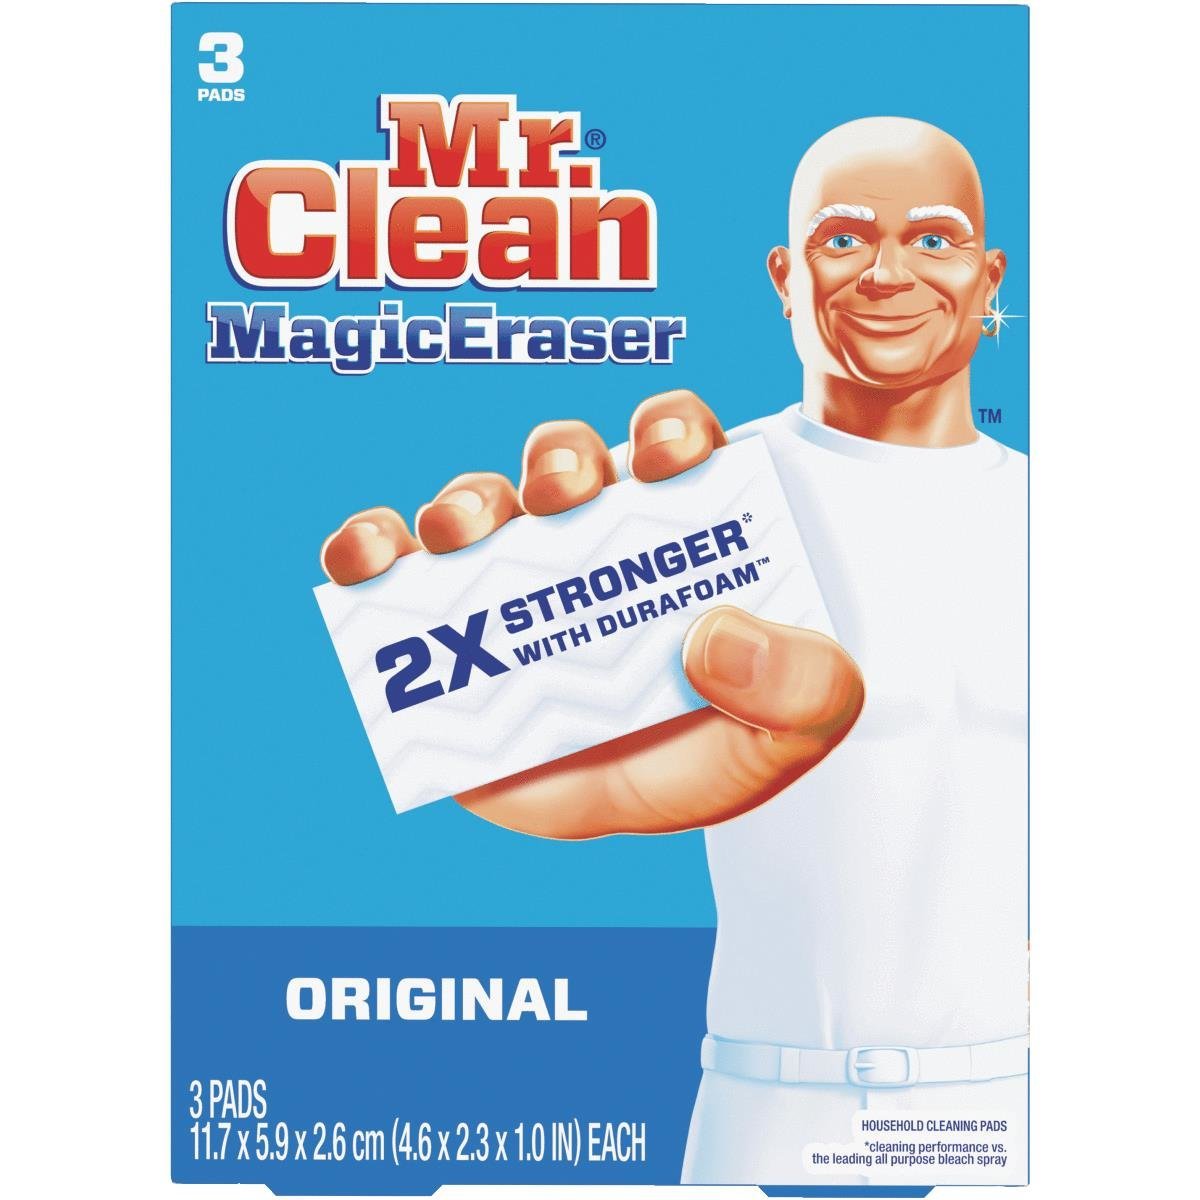 Khăn lau đa năng Mr. Clean 3-Pack Unscented (3 miếng) là một sản phẩm vô cùng tiện ích và hữu ích trong việc lau chùi nhà cửa. Xem hình ảnh liên quan để cảm nhận được sự linh hoạt của sản phẩm này và biết thêm chi tiết thông tin về sản phẩm.